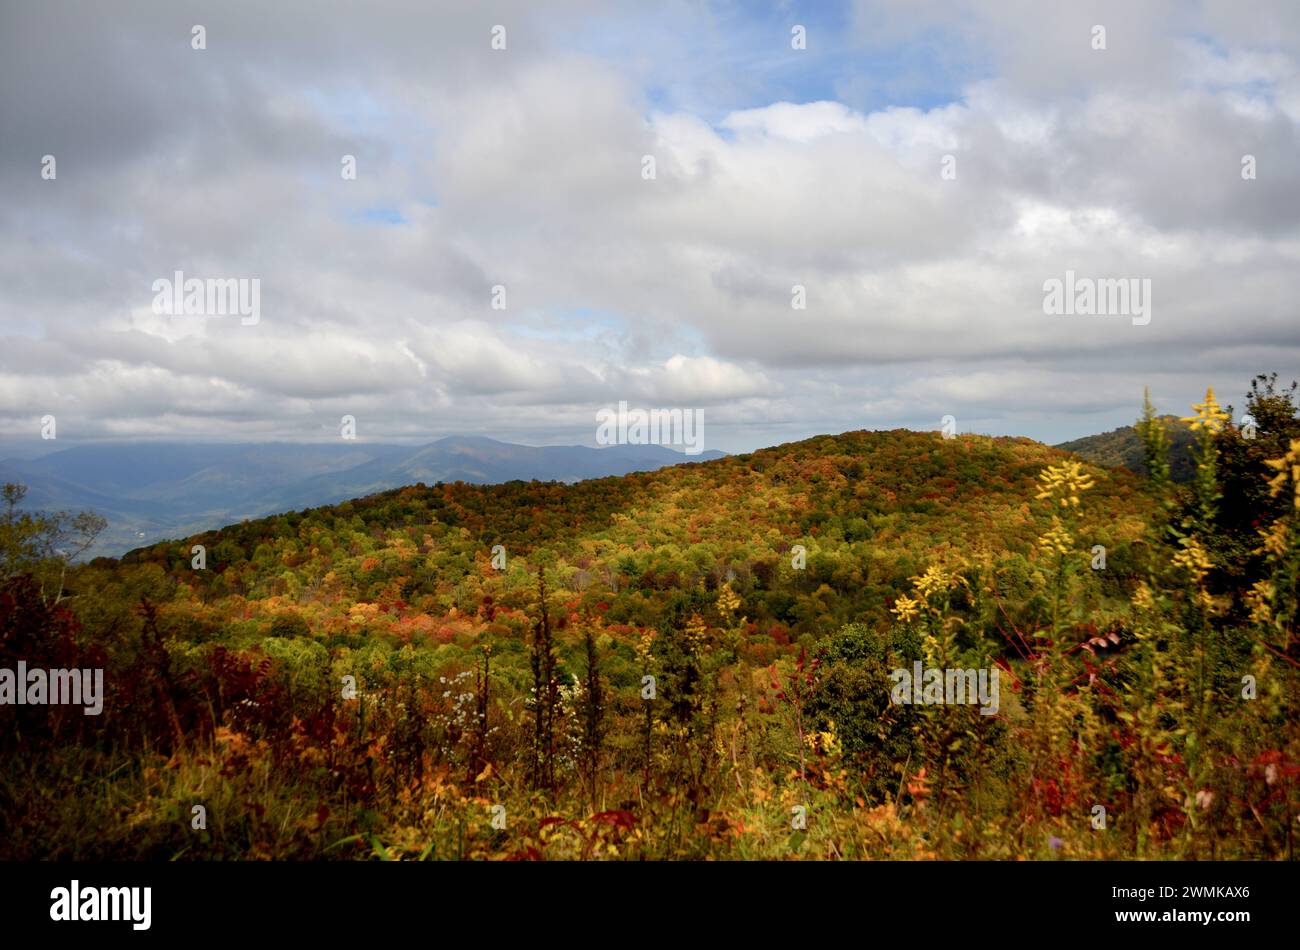 Herbstszene des Flattop Mountain in den Blue Ridge Mountains, North Carolina, USA; Fairview, North Carolina, Vereinigte Staaten von Amerika Stockfoto